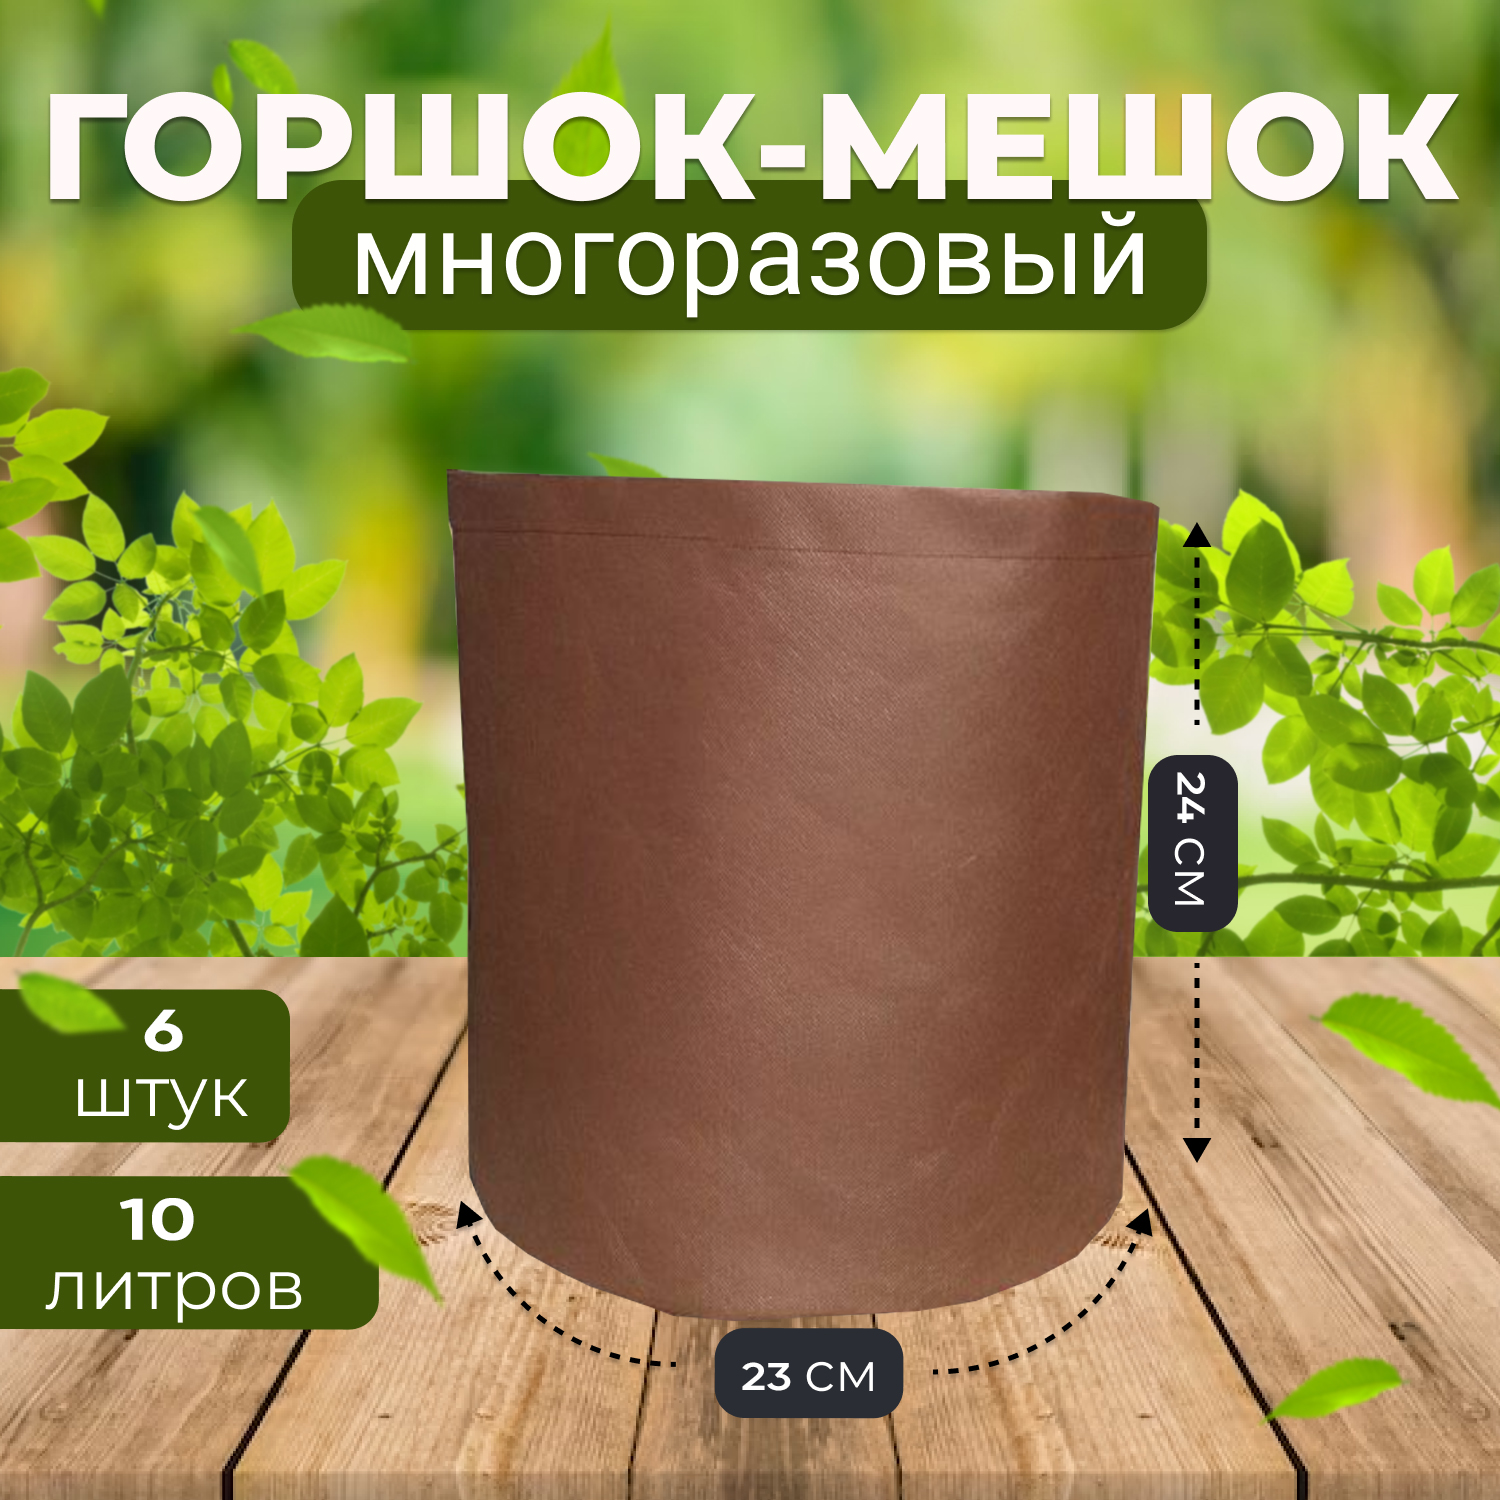 Мешок горшок текстильный из спанбонда Grower Green 10_litrov-Brown_6 10 литров, 6шт.